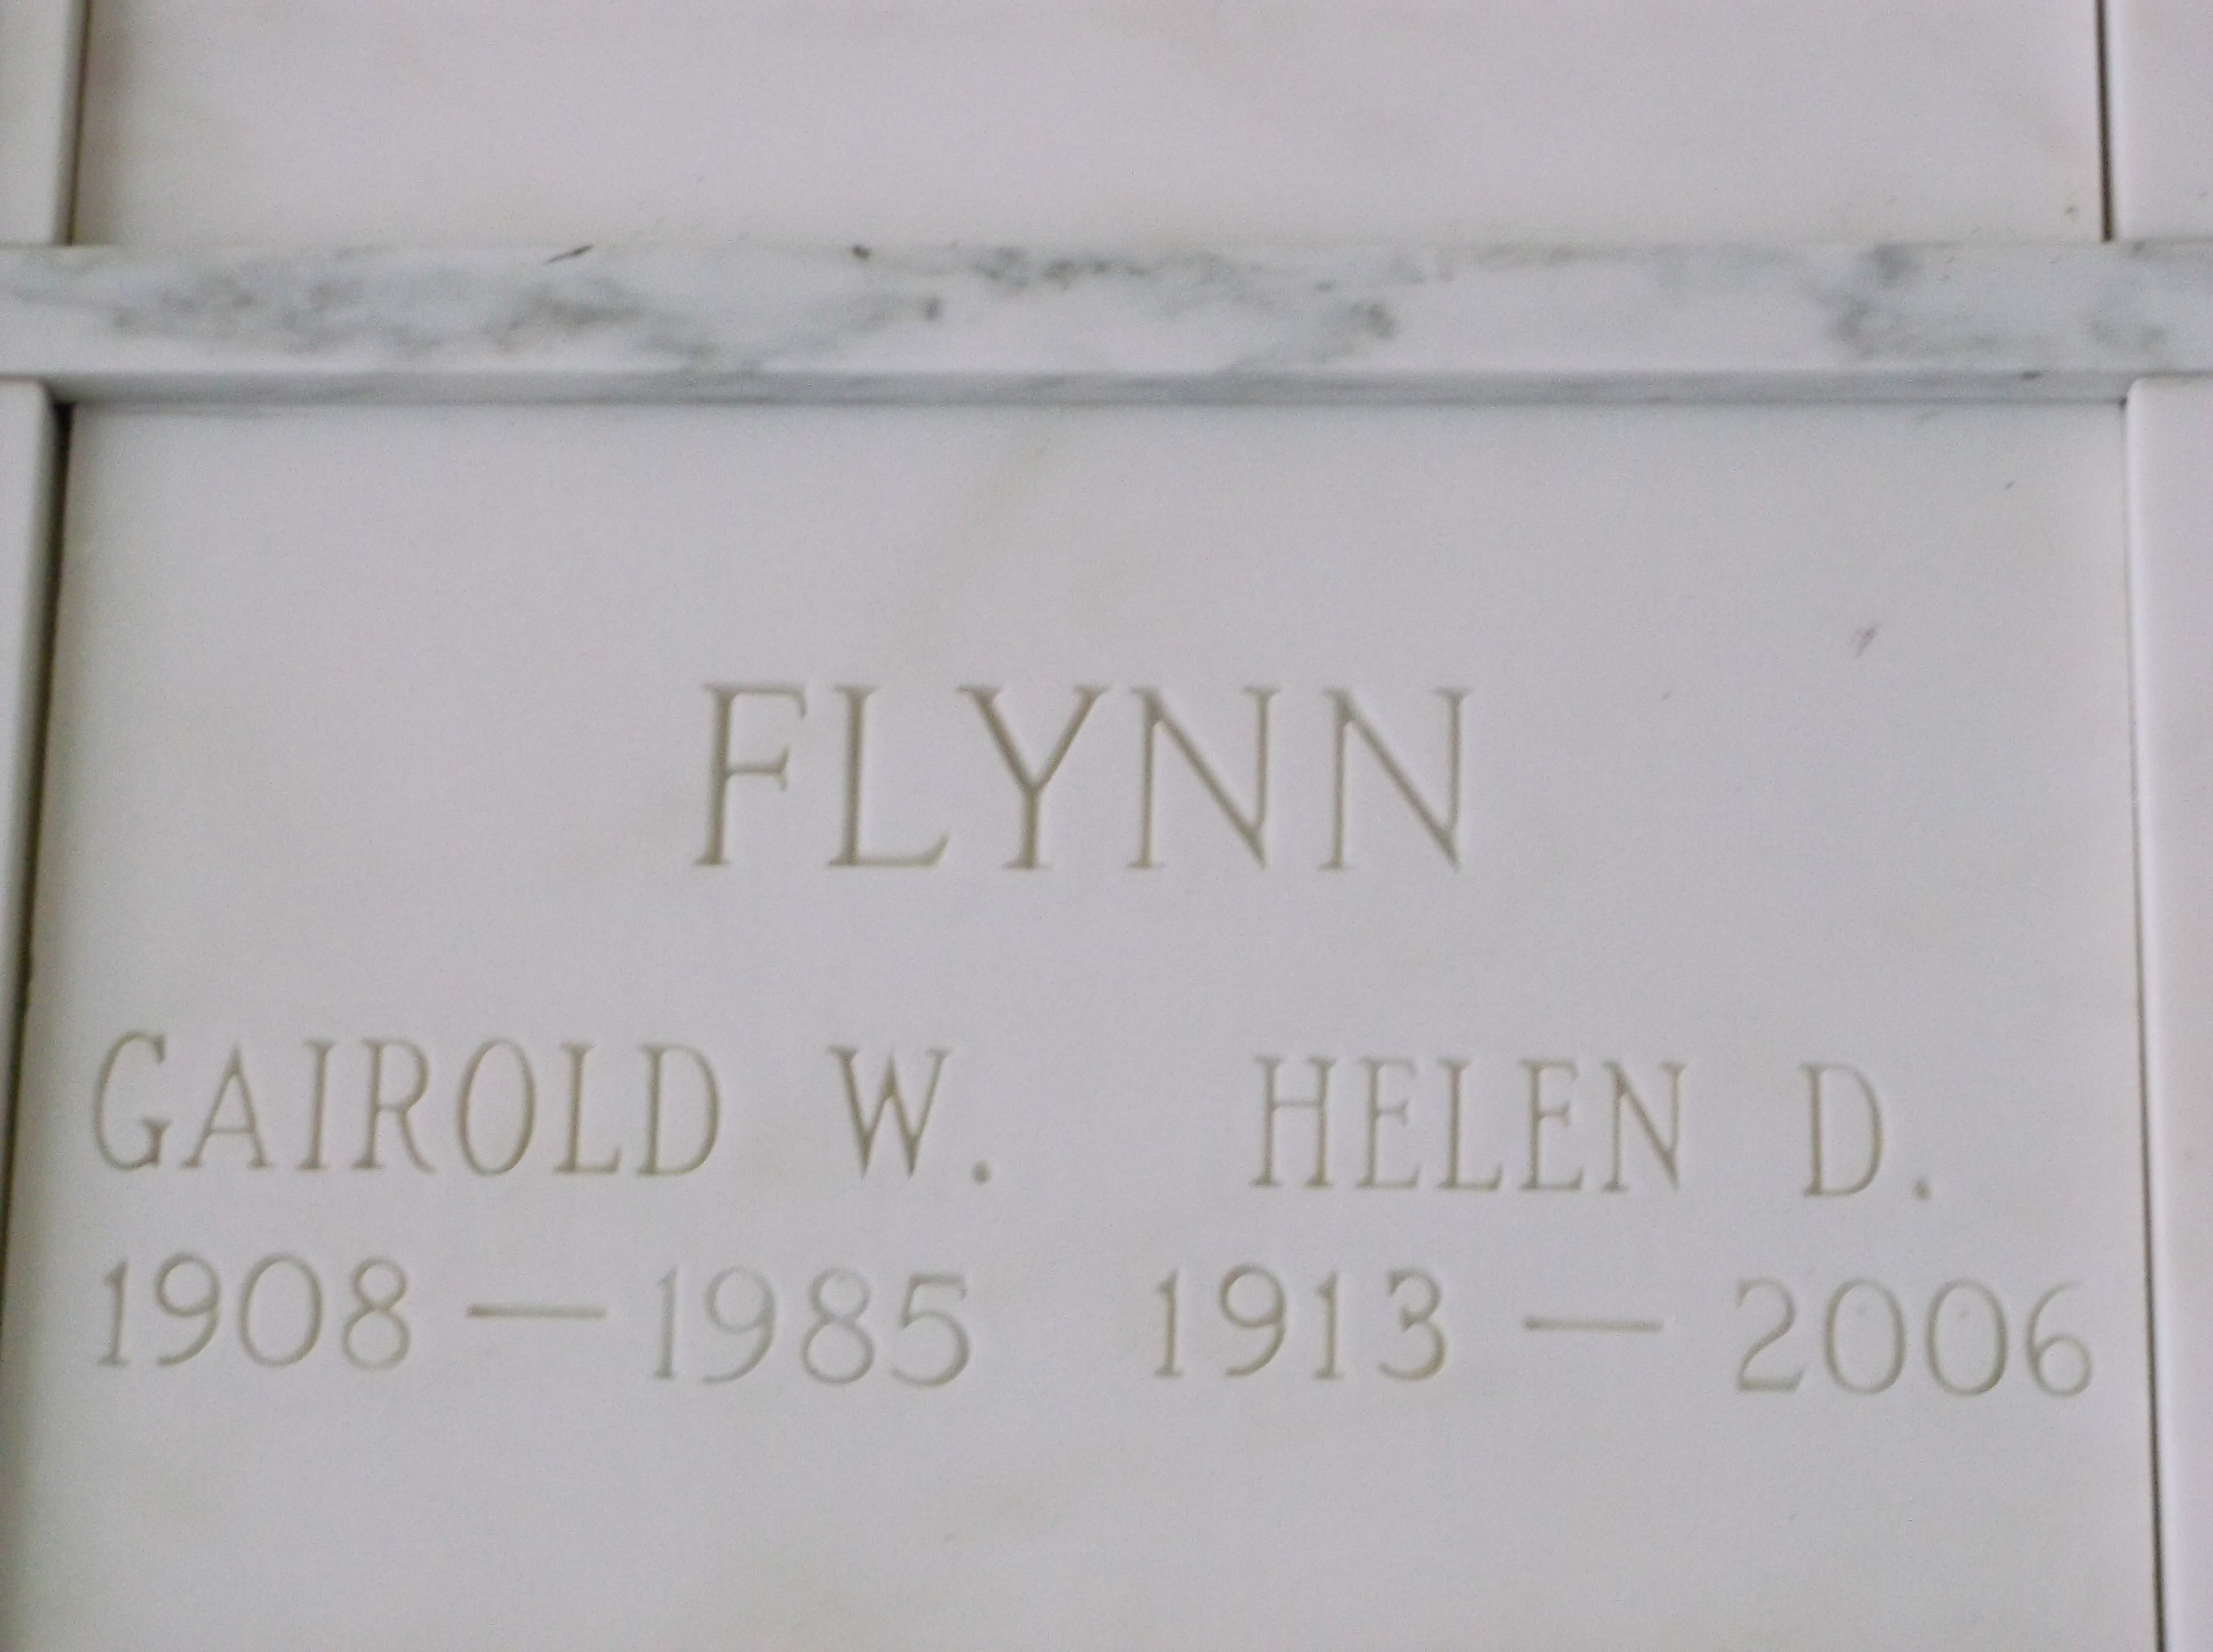 Helen D Flynn